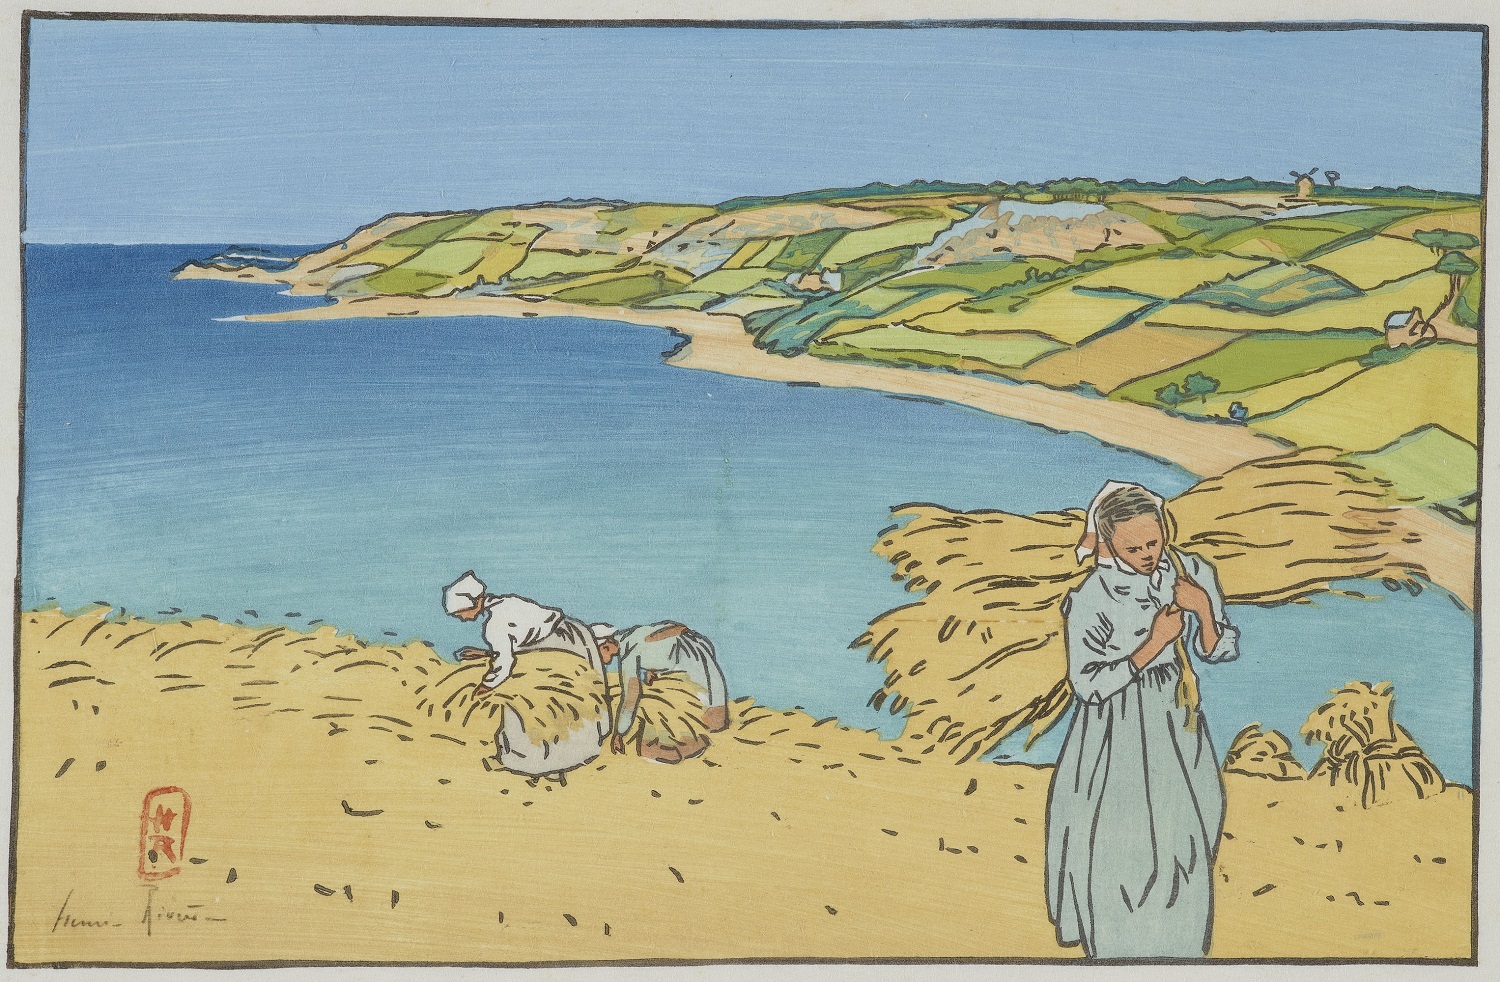 アンリ・リヴィエール 連作『ブルターニュ風景』より《ロネイ湾（ロギヴィ）》 1891年 多色刷り木版 225x349mm 国立西洋美術館